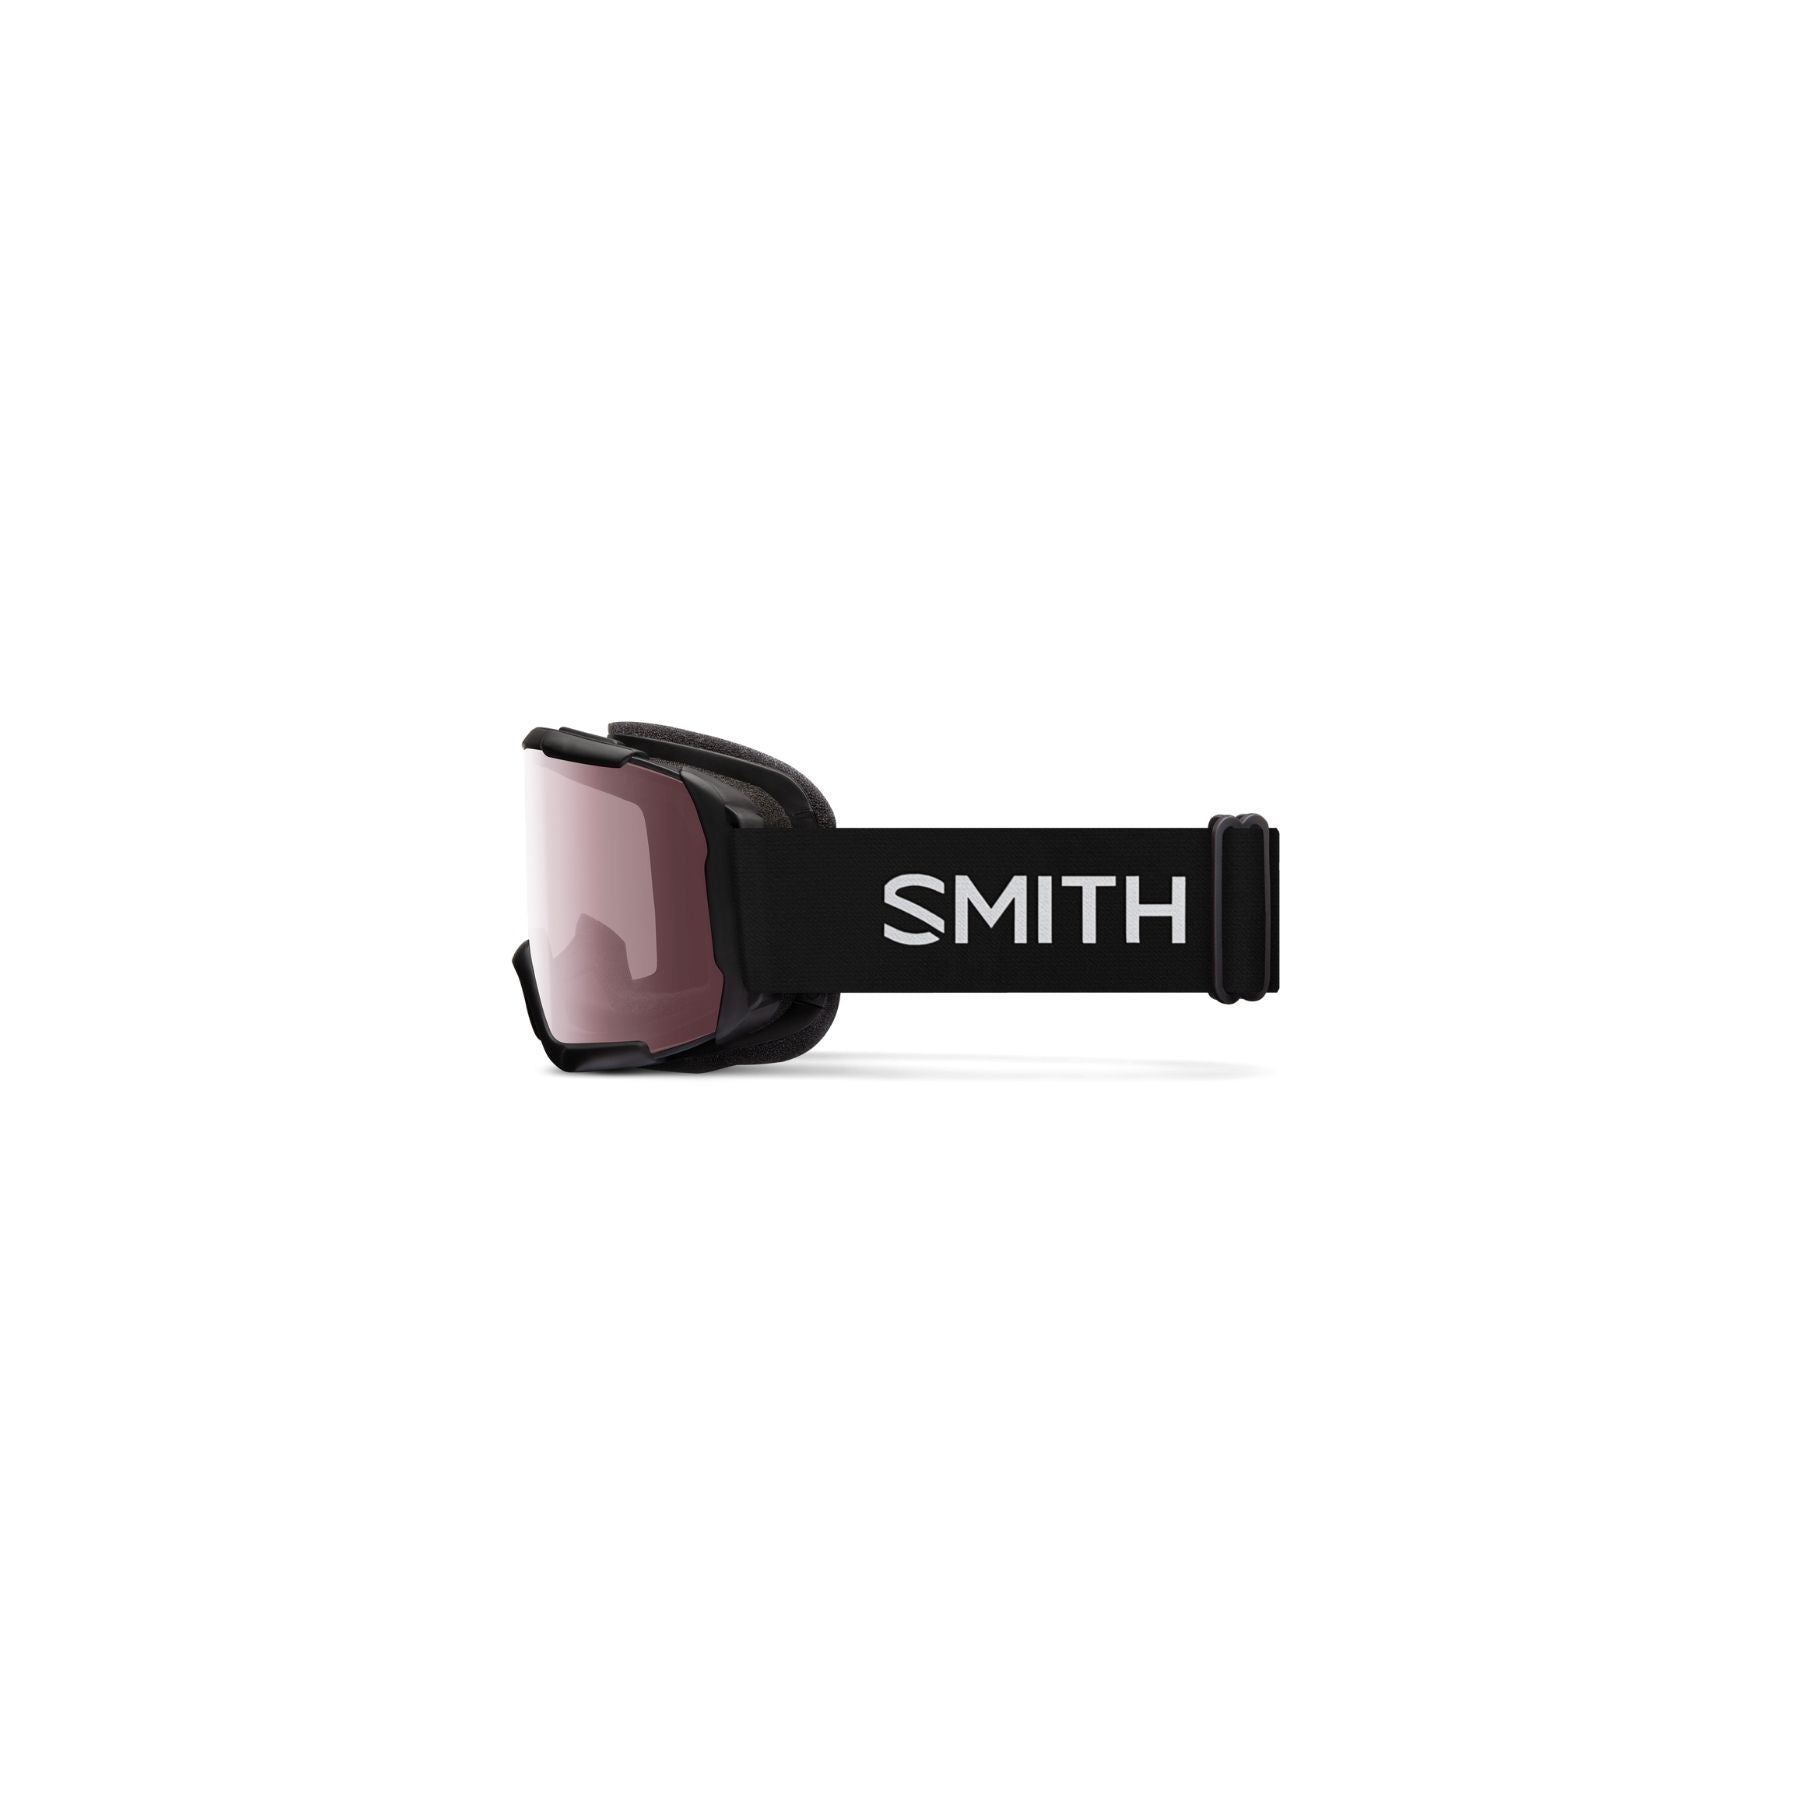 Smith Daredevil Jr Goggle in Shiny Black